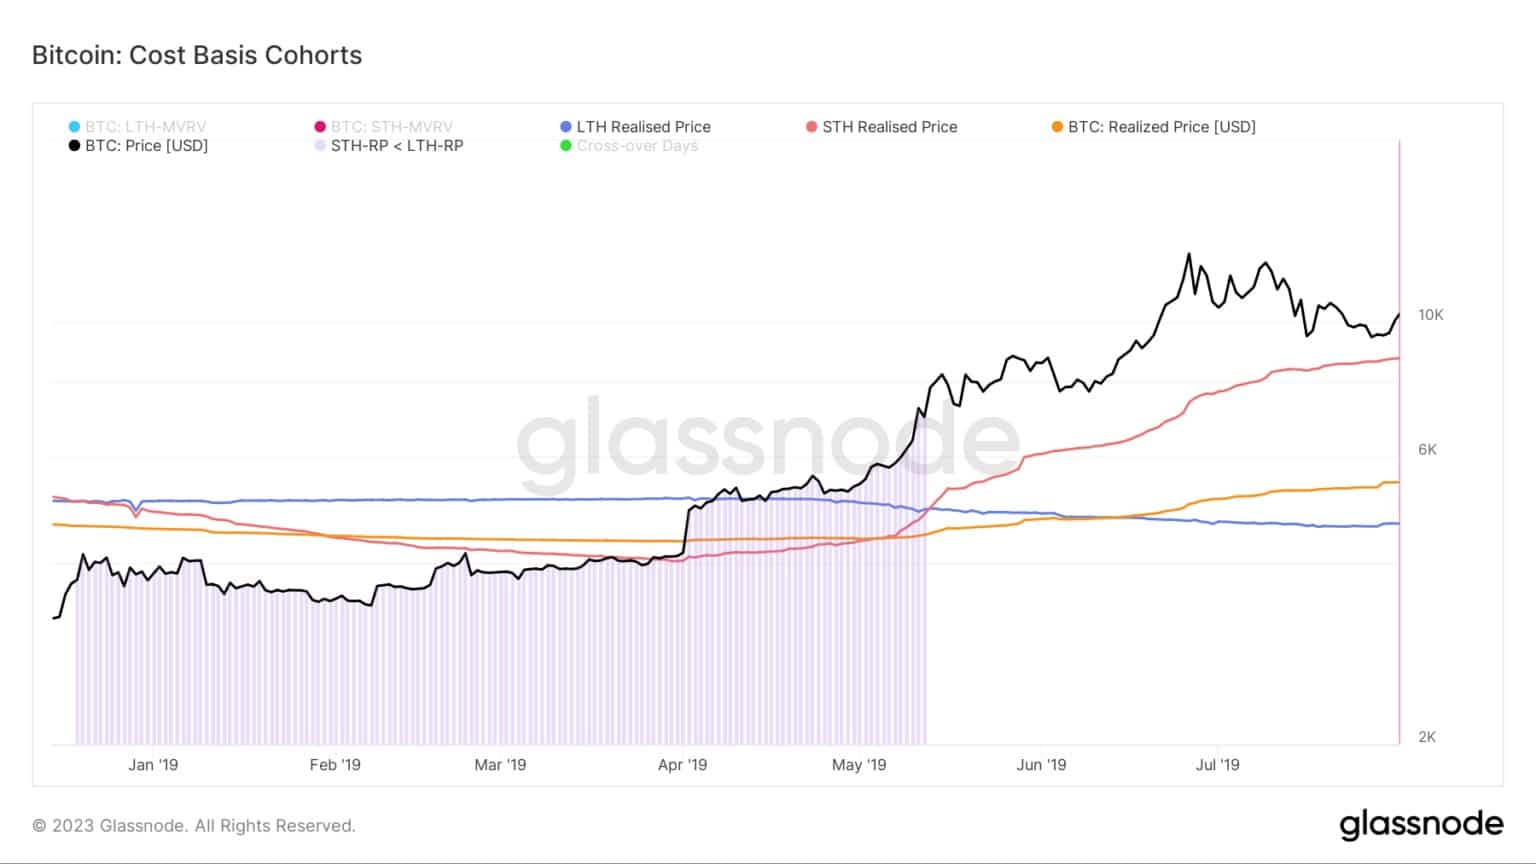 Graf znázorňující nákladovou bázi pro kohorty Bitcoinu během medvědího trhu 2018/2019 (zdroj: Glassnode)